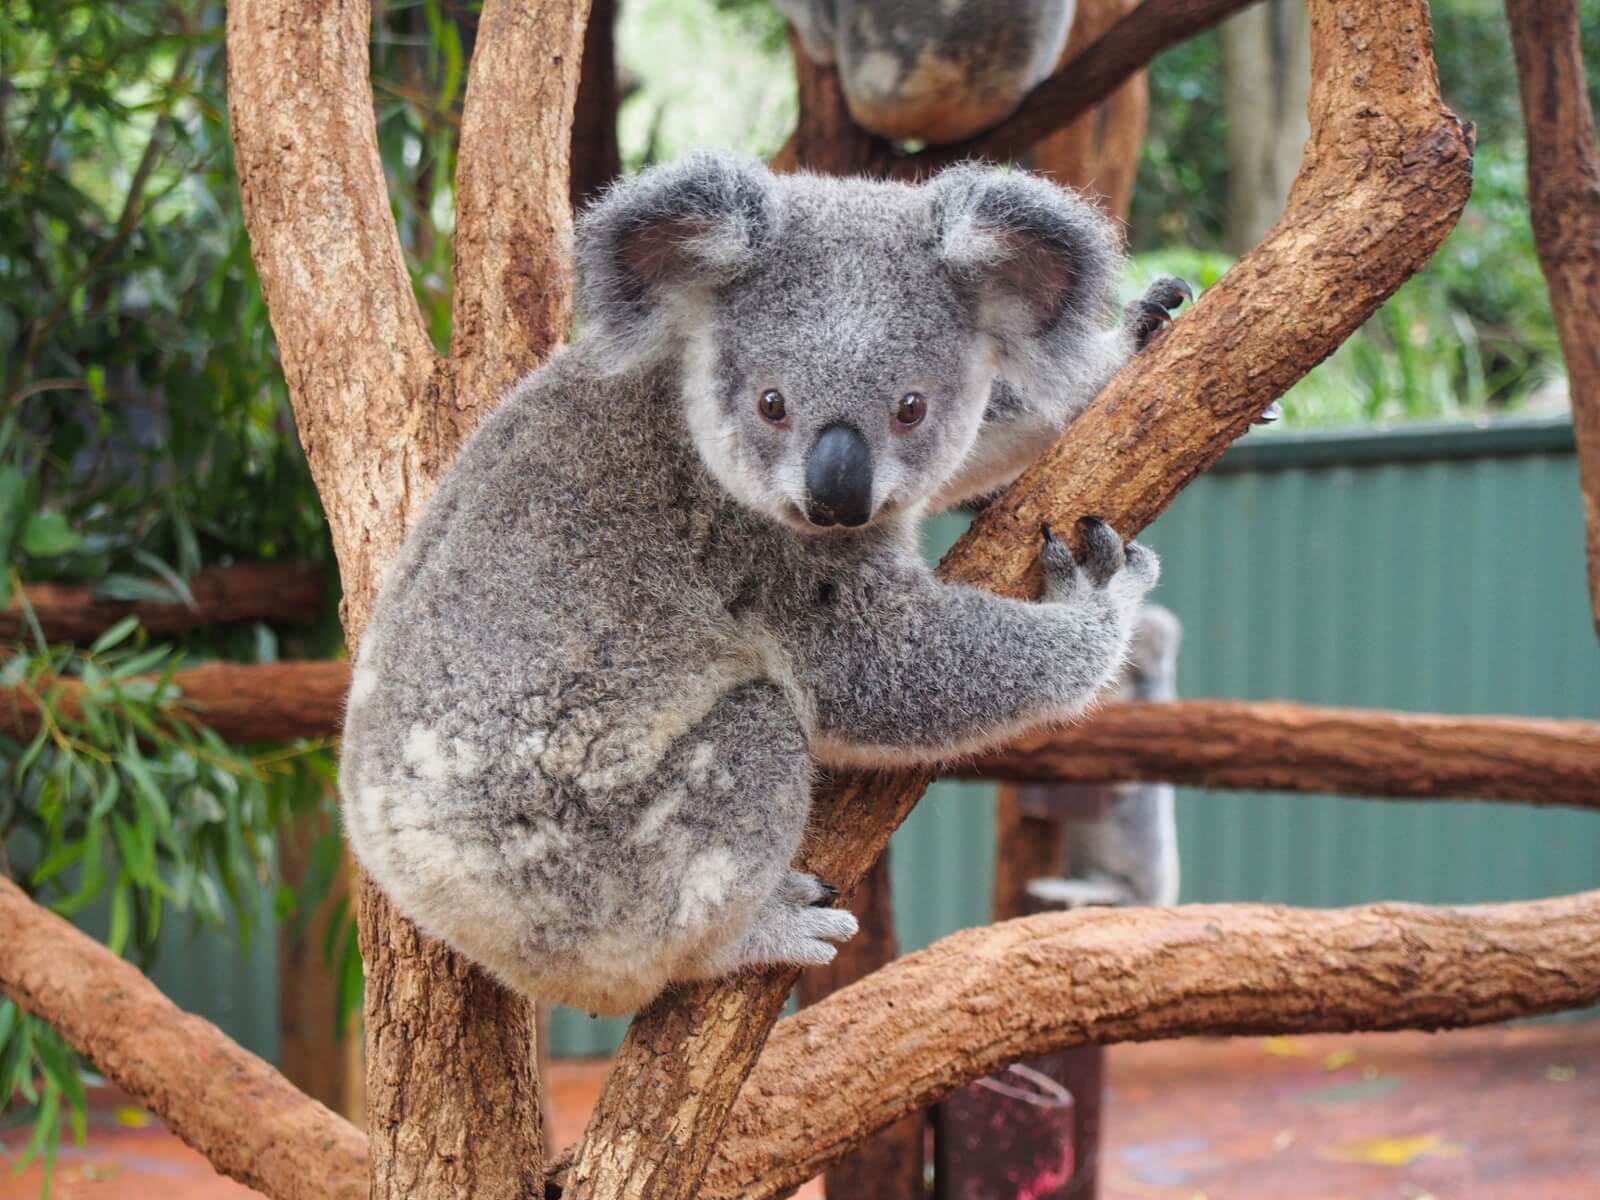 One of the many Koalas at Lone Pine Koala Sanctuary